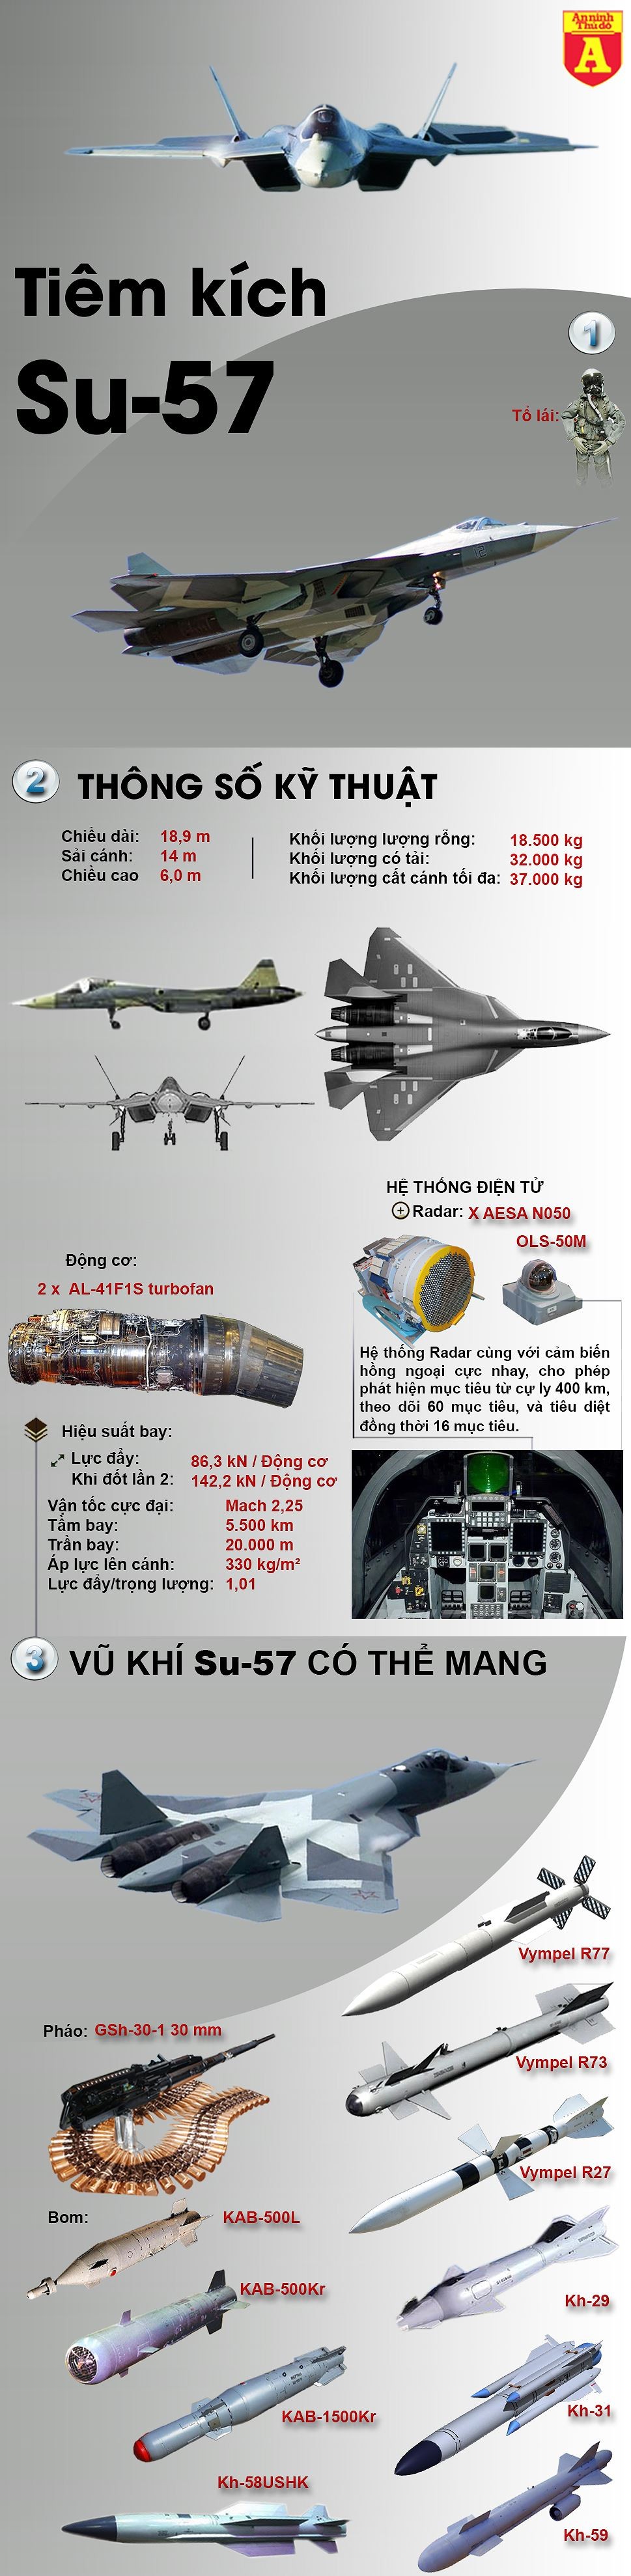 [Infographic] Bất ngờ tiêm kích tàng hình Su-57 vẫn nằm phục tại Syria ảnh 2